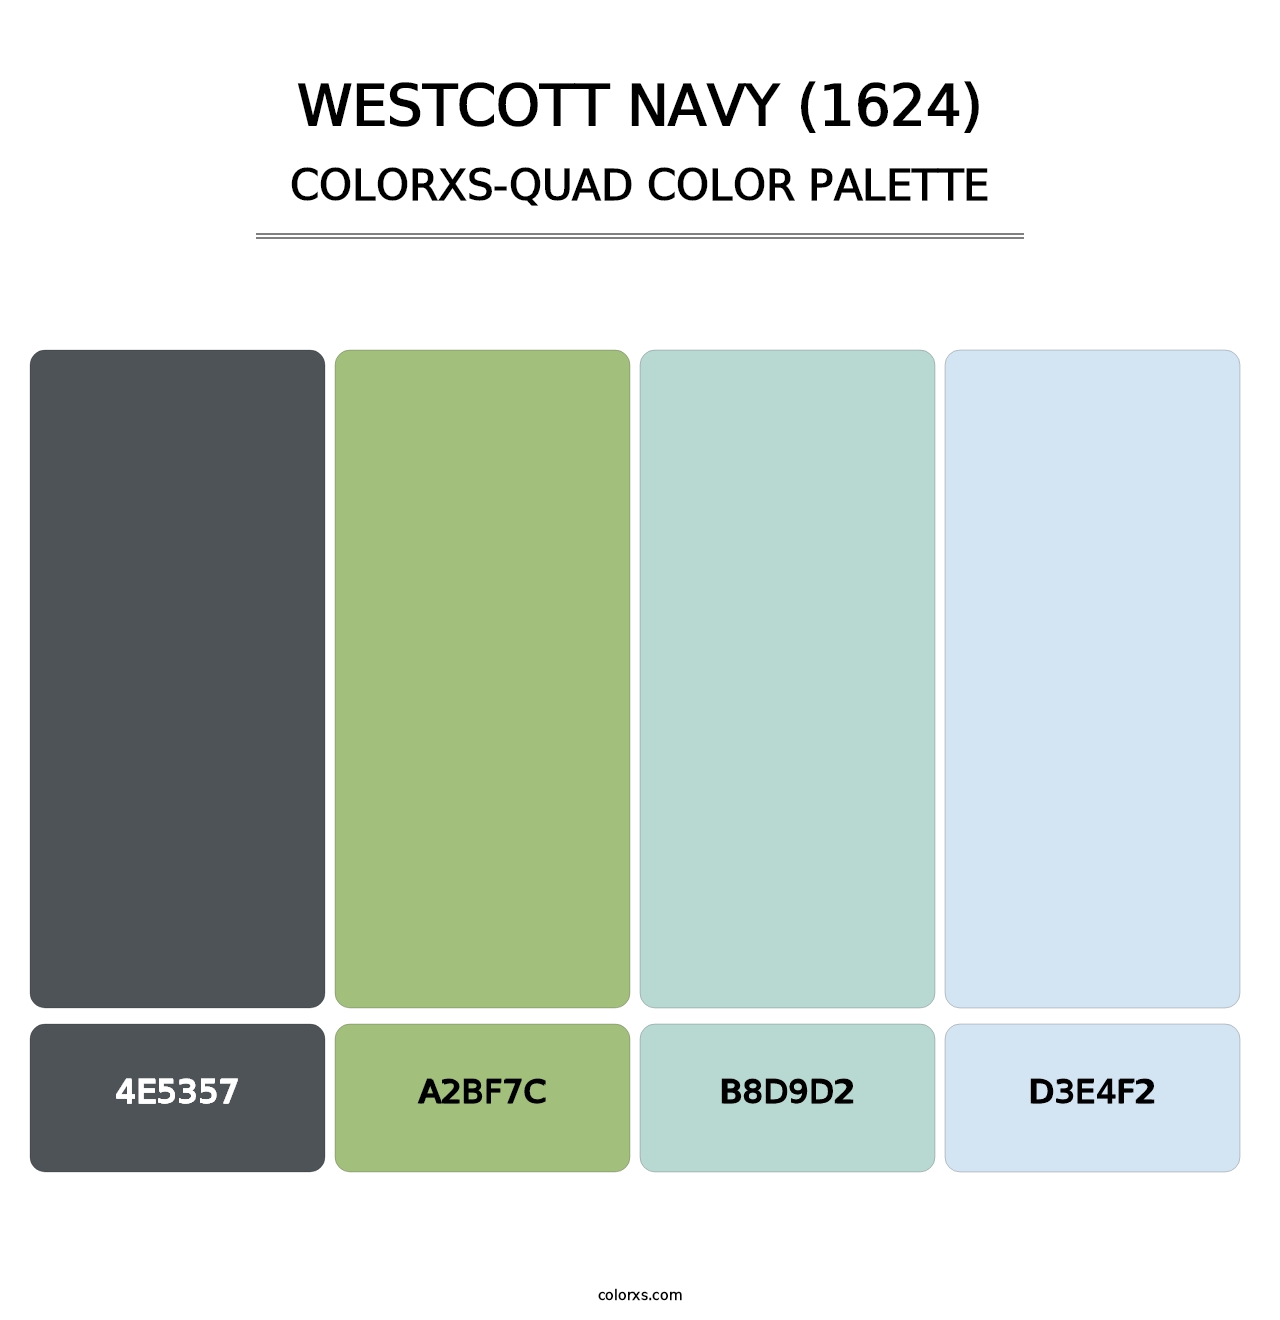 Westcott Navy (1624) - Colorxs Quad Palette